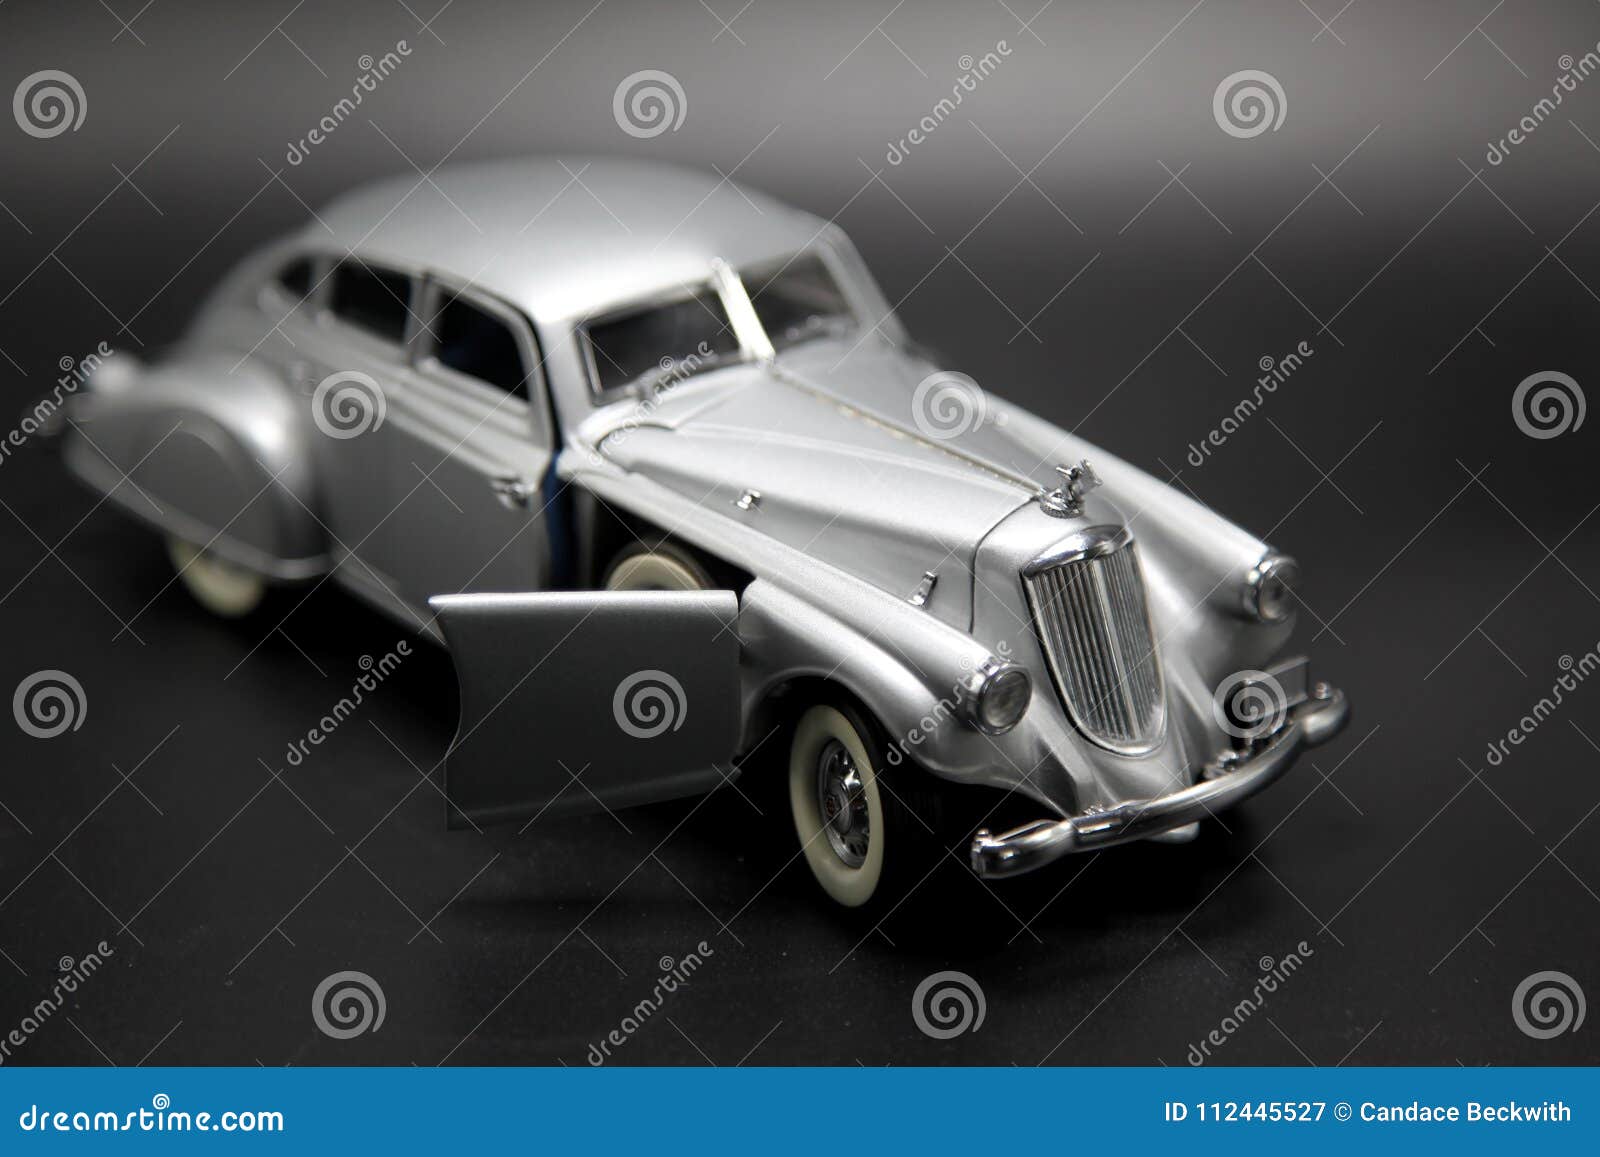 Klassisches silbernes futuristisches Auto-Modell. Dieses ist ein Spielzeug/ein Modell ikonenhaften Pierce Arrows von der ` s Futurismus-Bewegung 1950